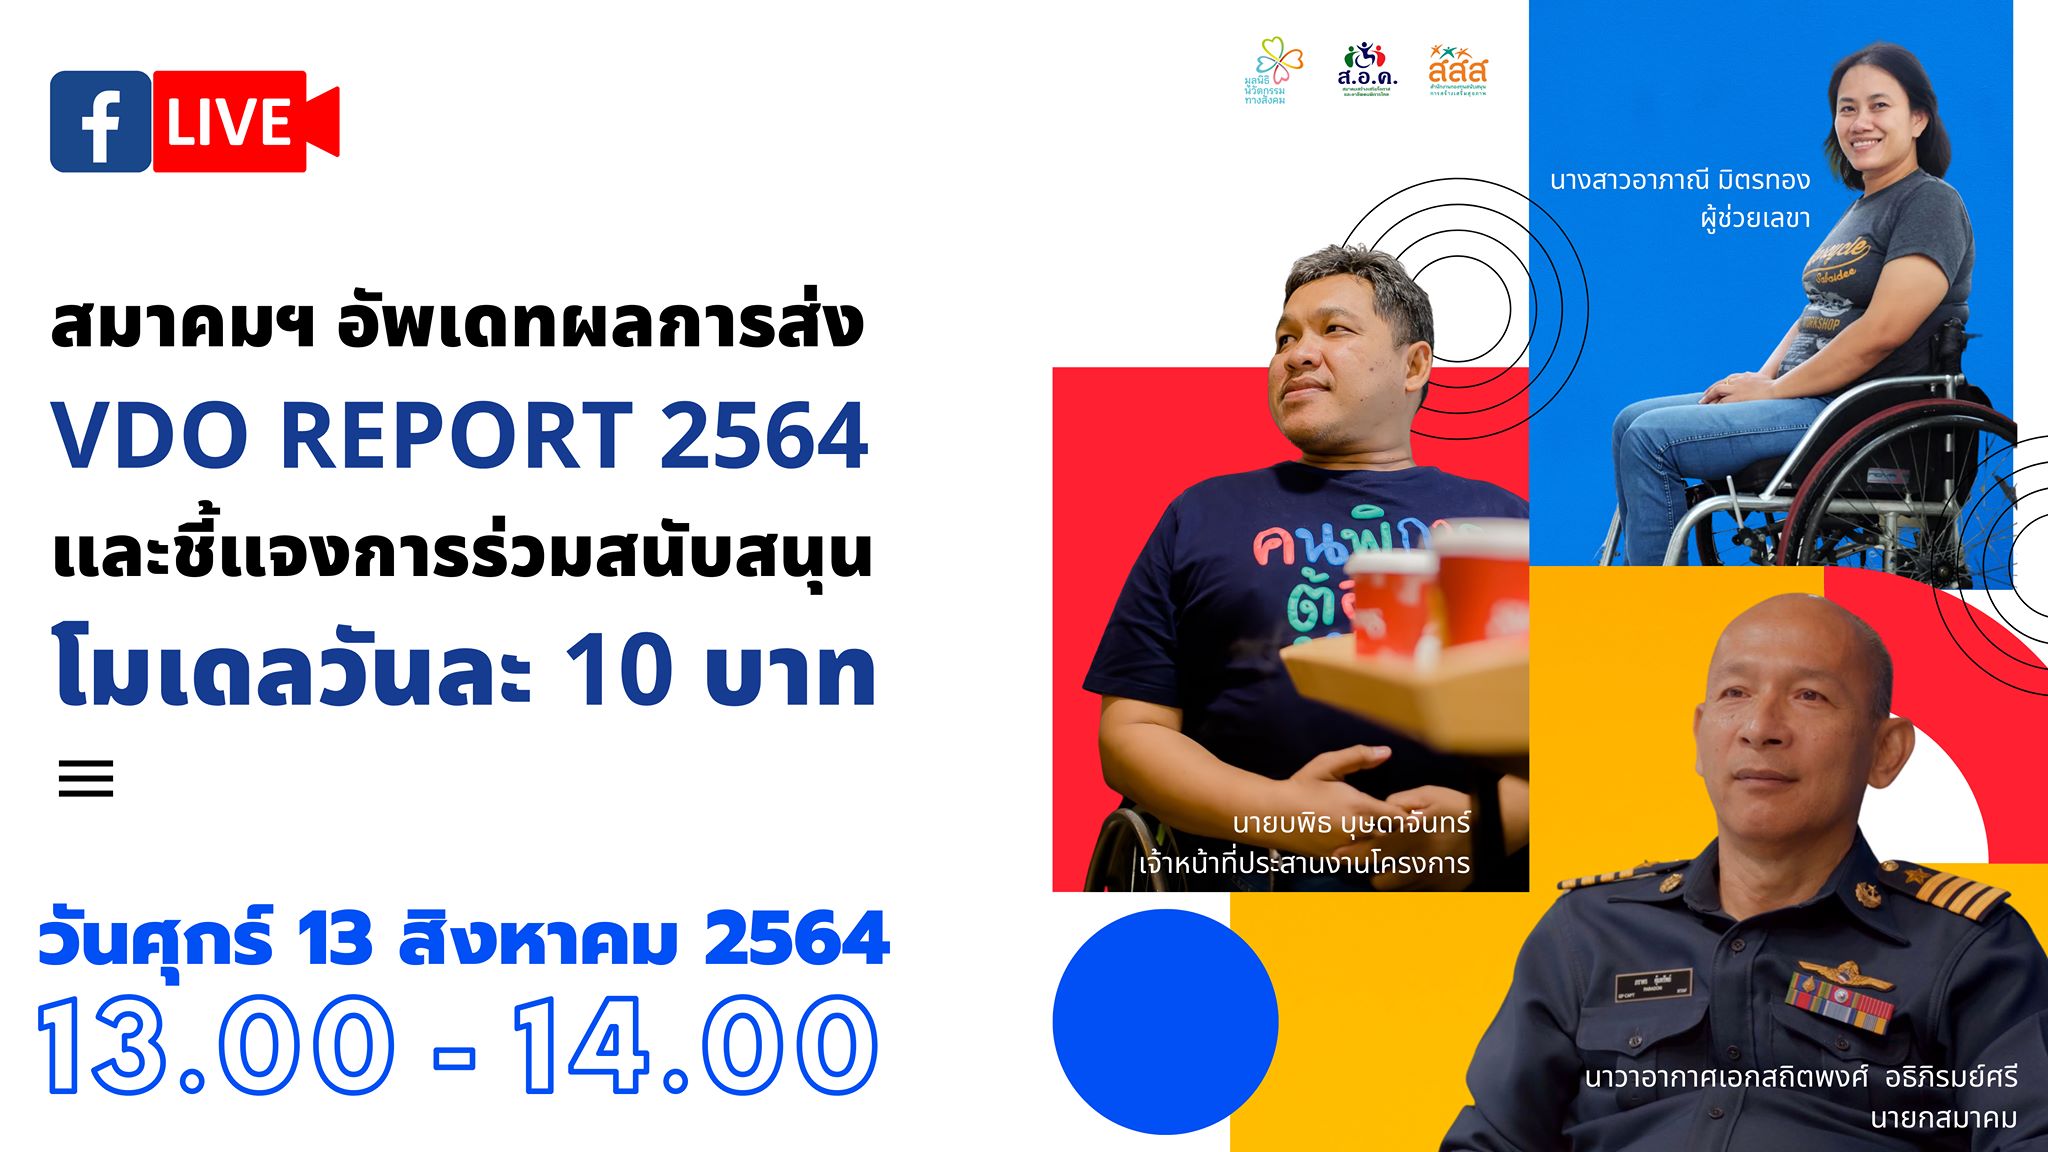 สมาคมสร้างเสริมโอกาสและอาชีพคนพิการไทย อัพเดทผลการส่ง VDO REPORT ประจำปี 2564 และชี้แจงการร่วมสนับสนุนโมเดลวันละ 10 บาท